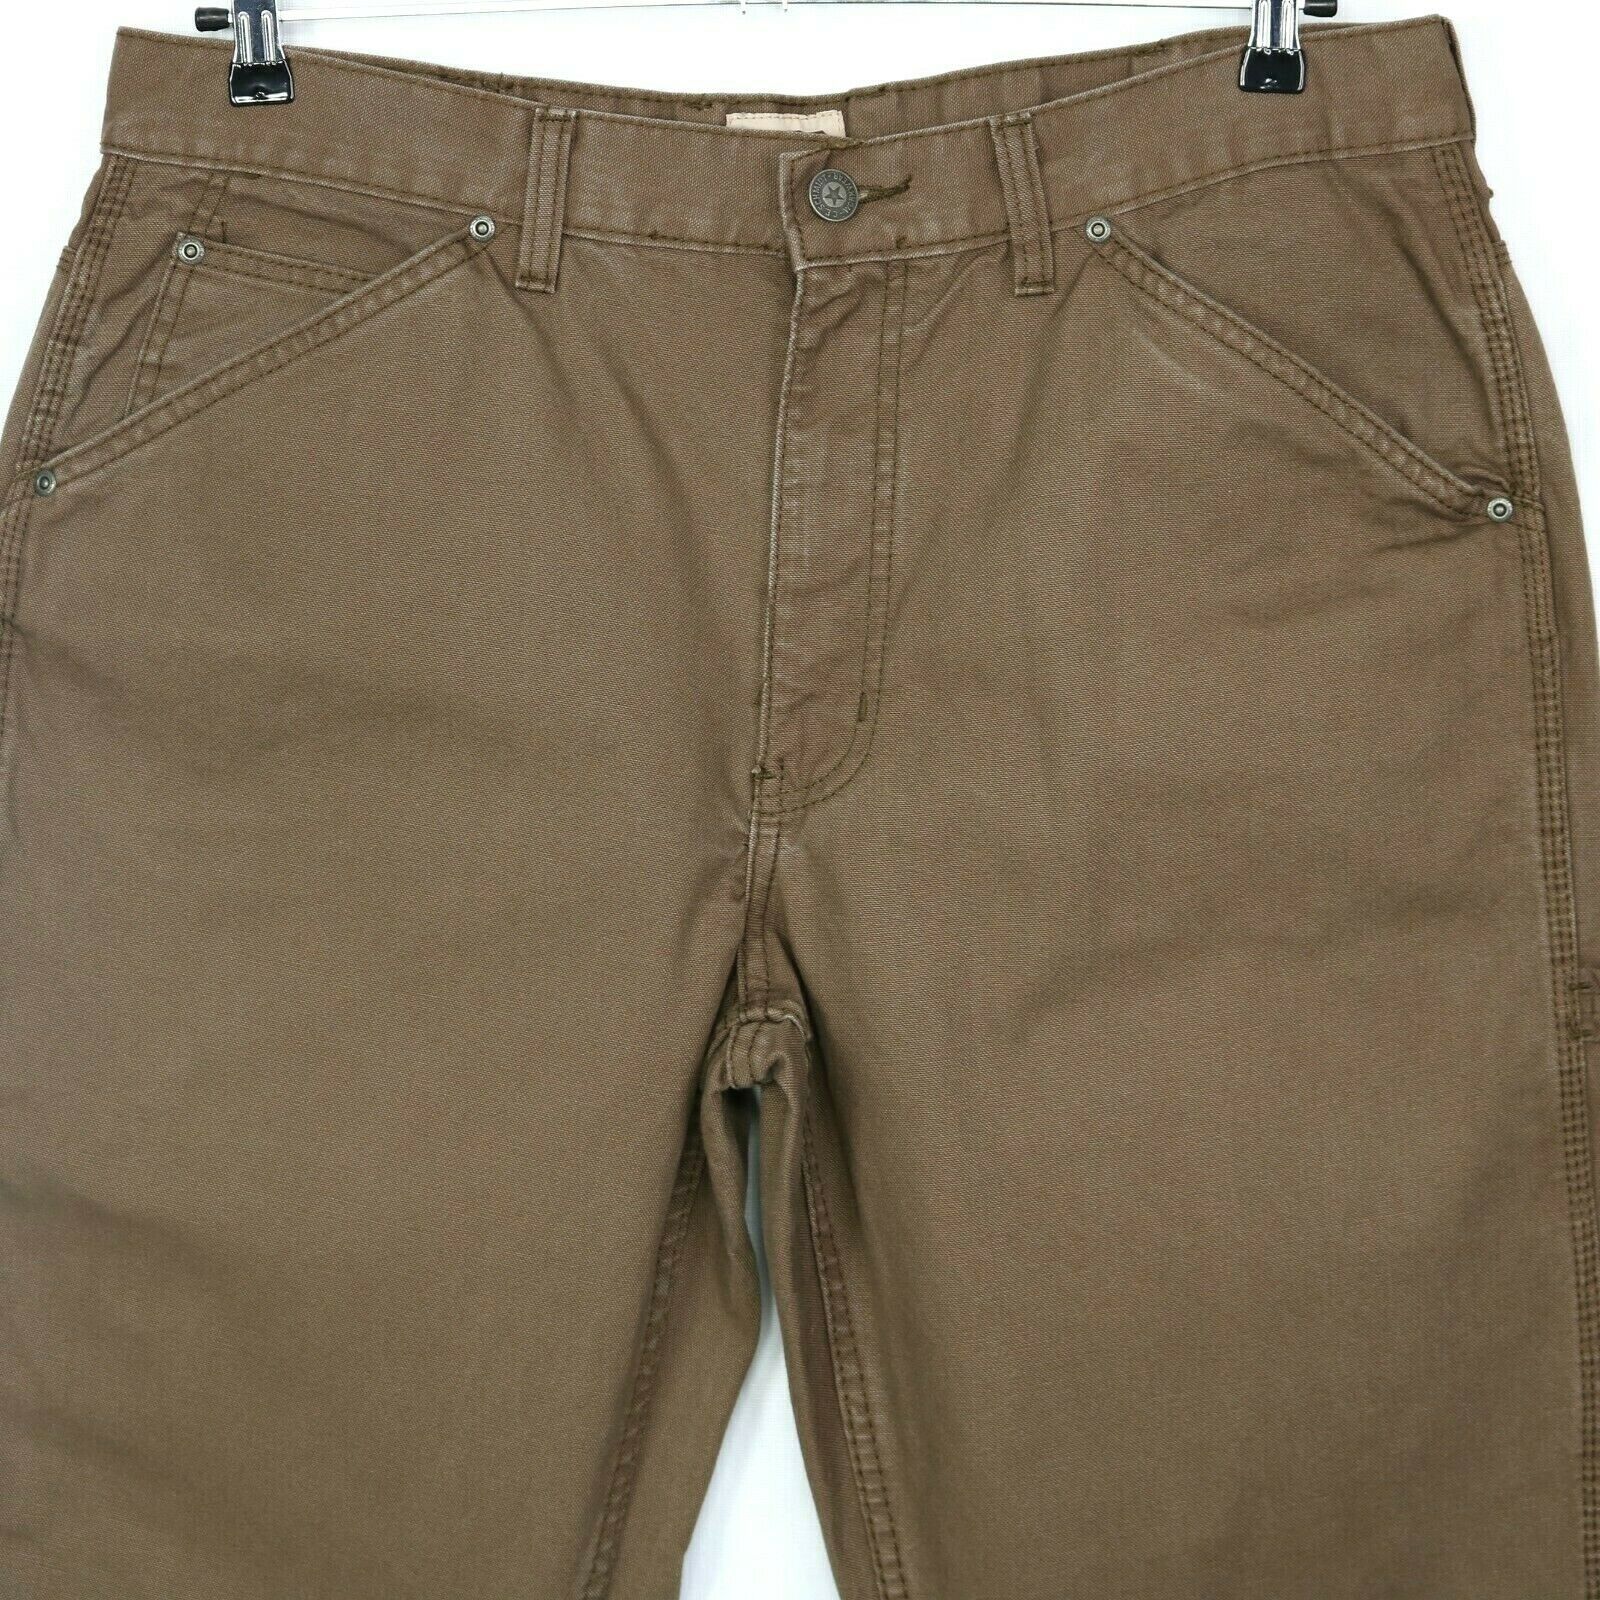 CE Schmidt Workwear Mens Carpenter Utility Jeans Pants Size 38 X 30 ...